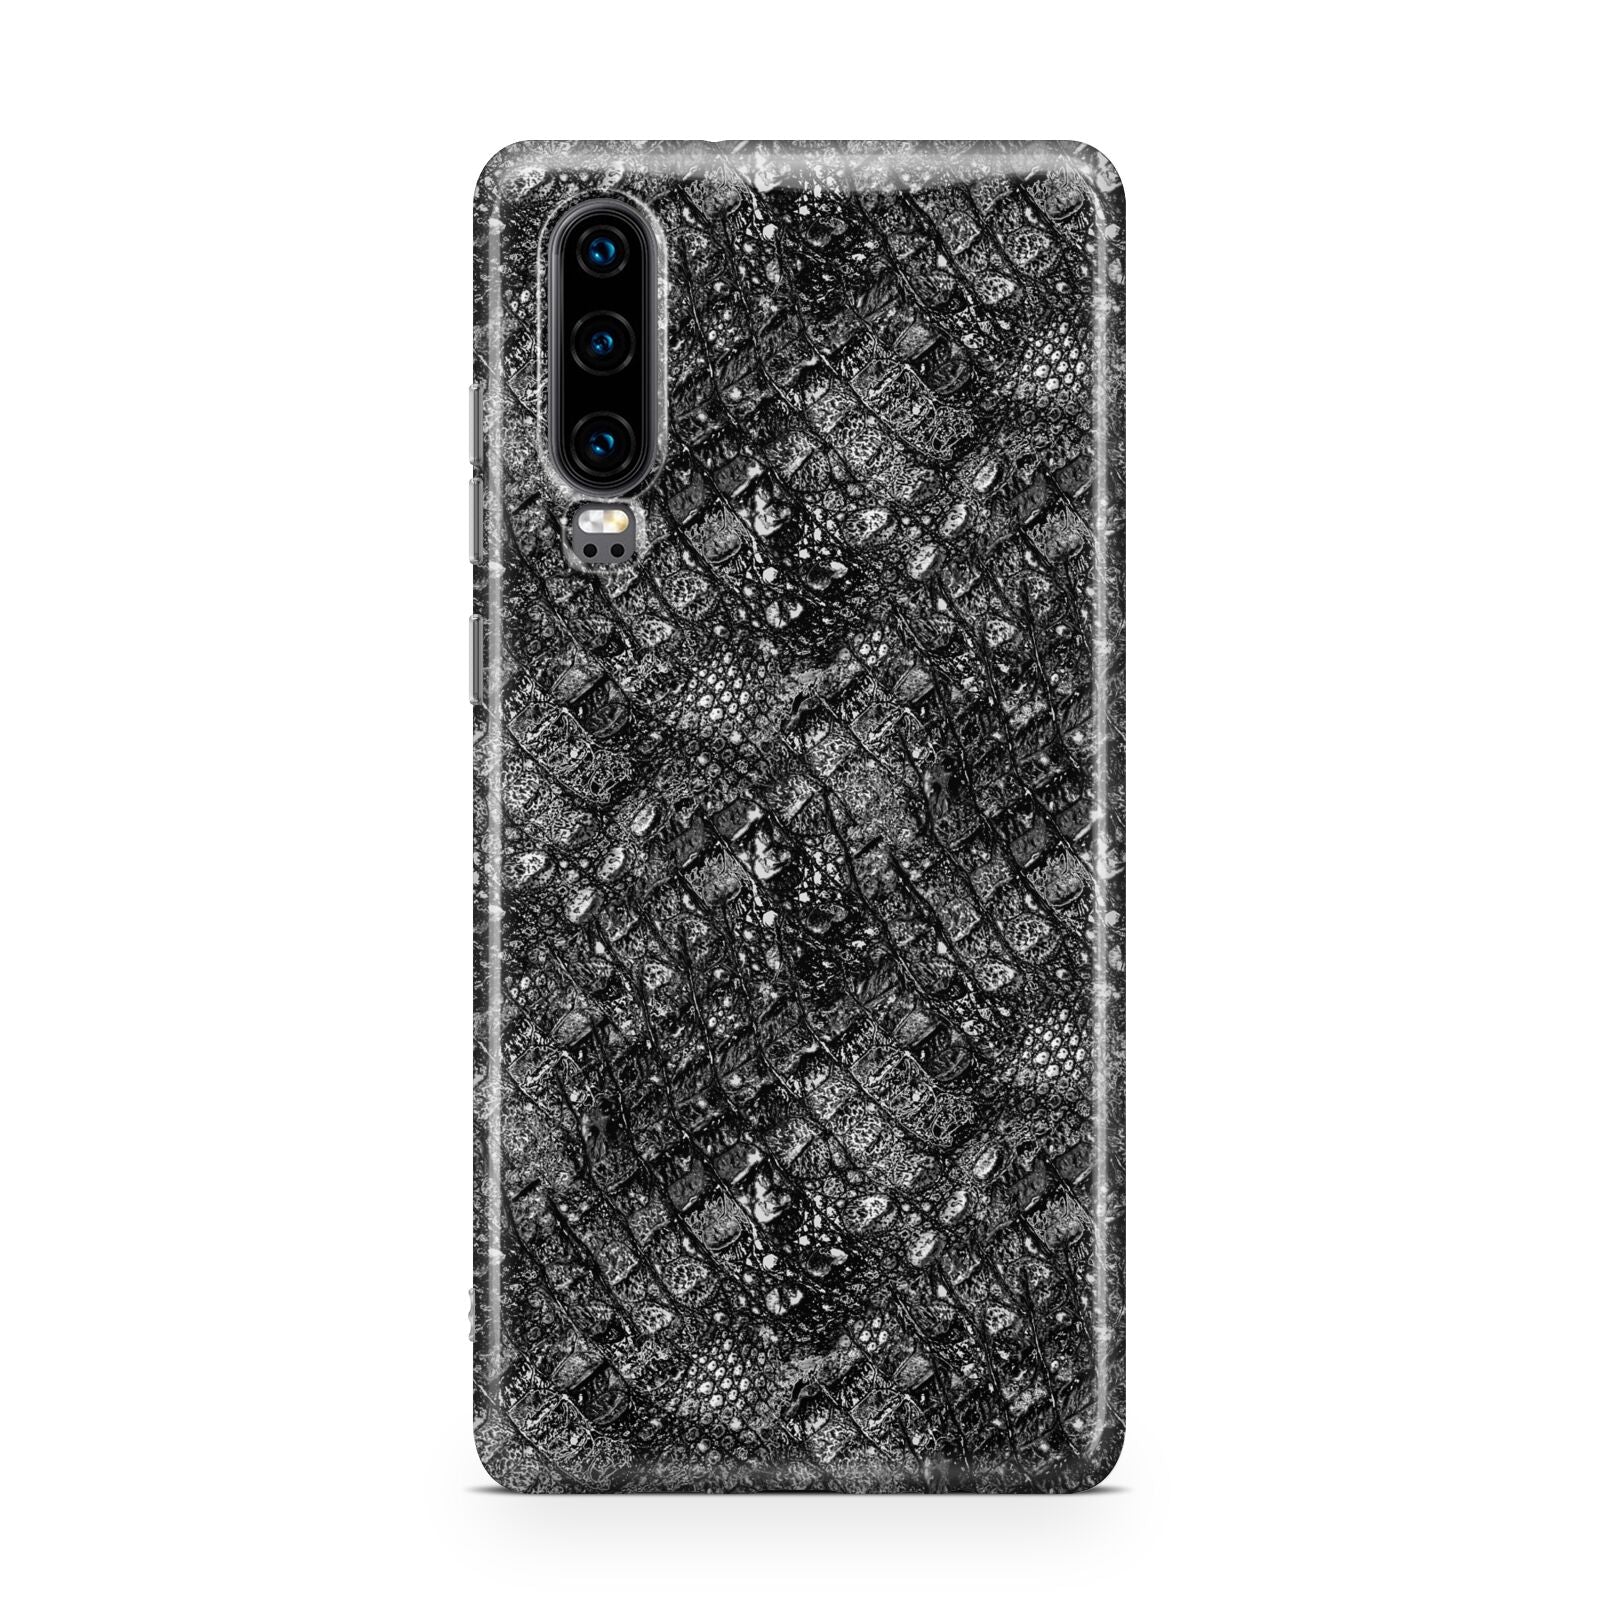 Snakeskin Design Huawei P30 Phone Case